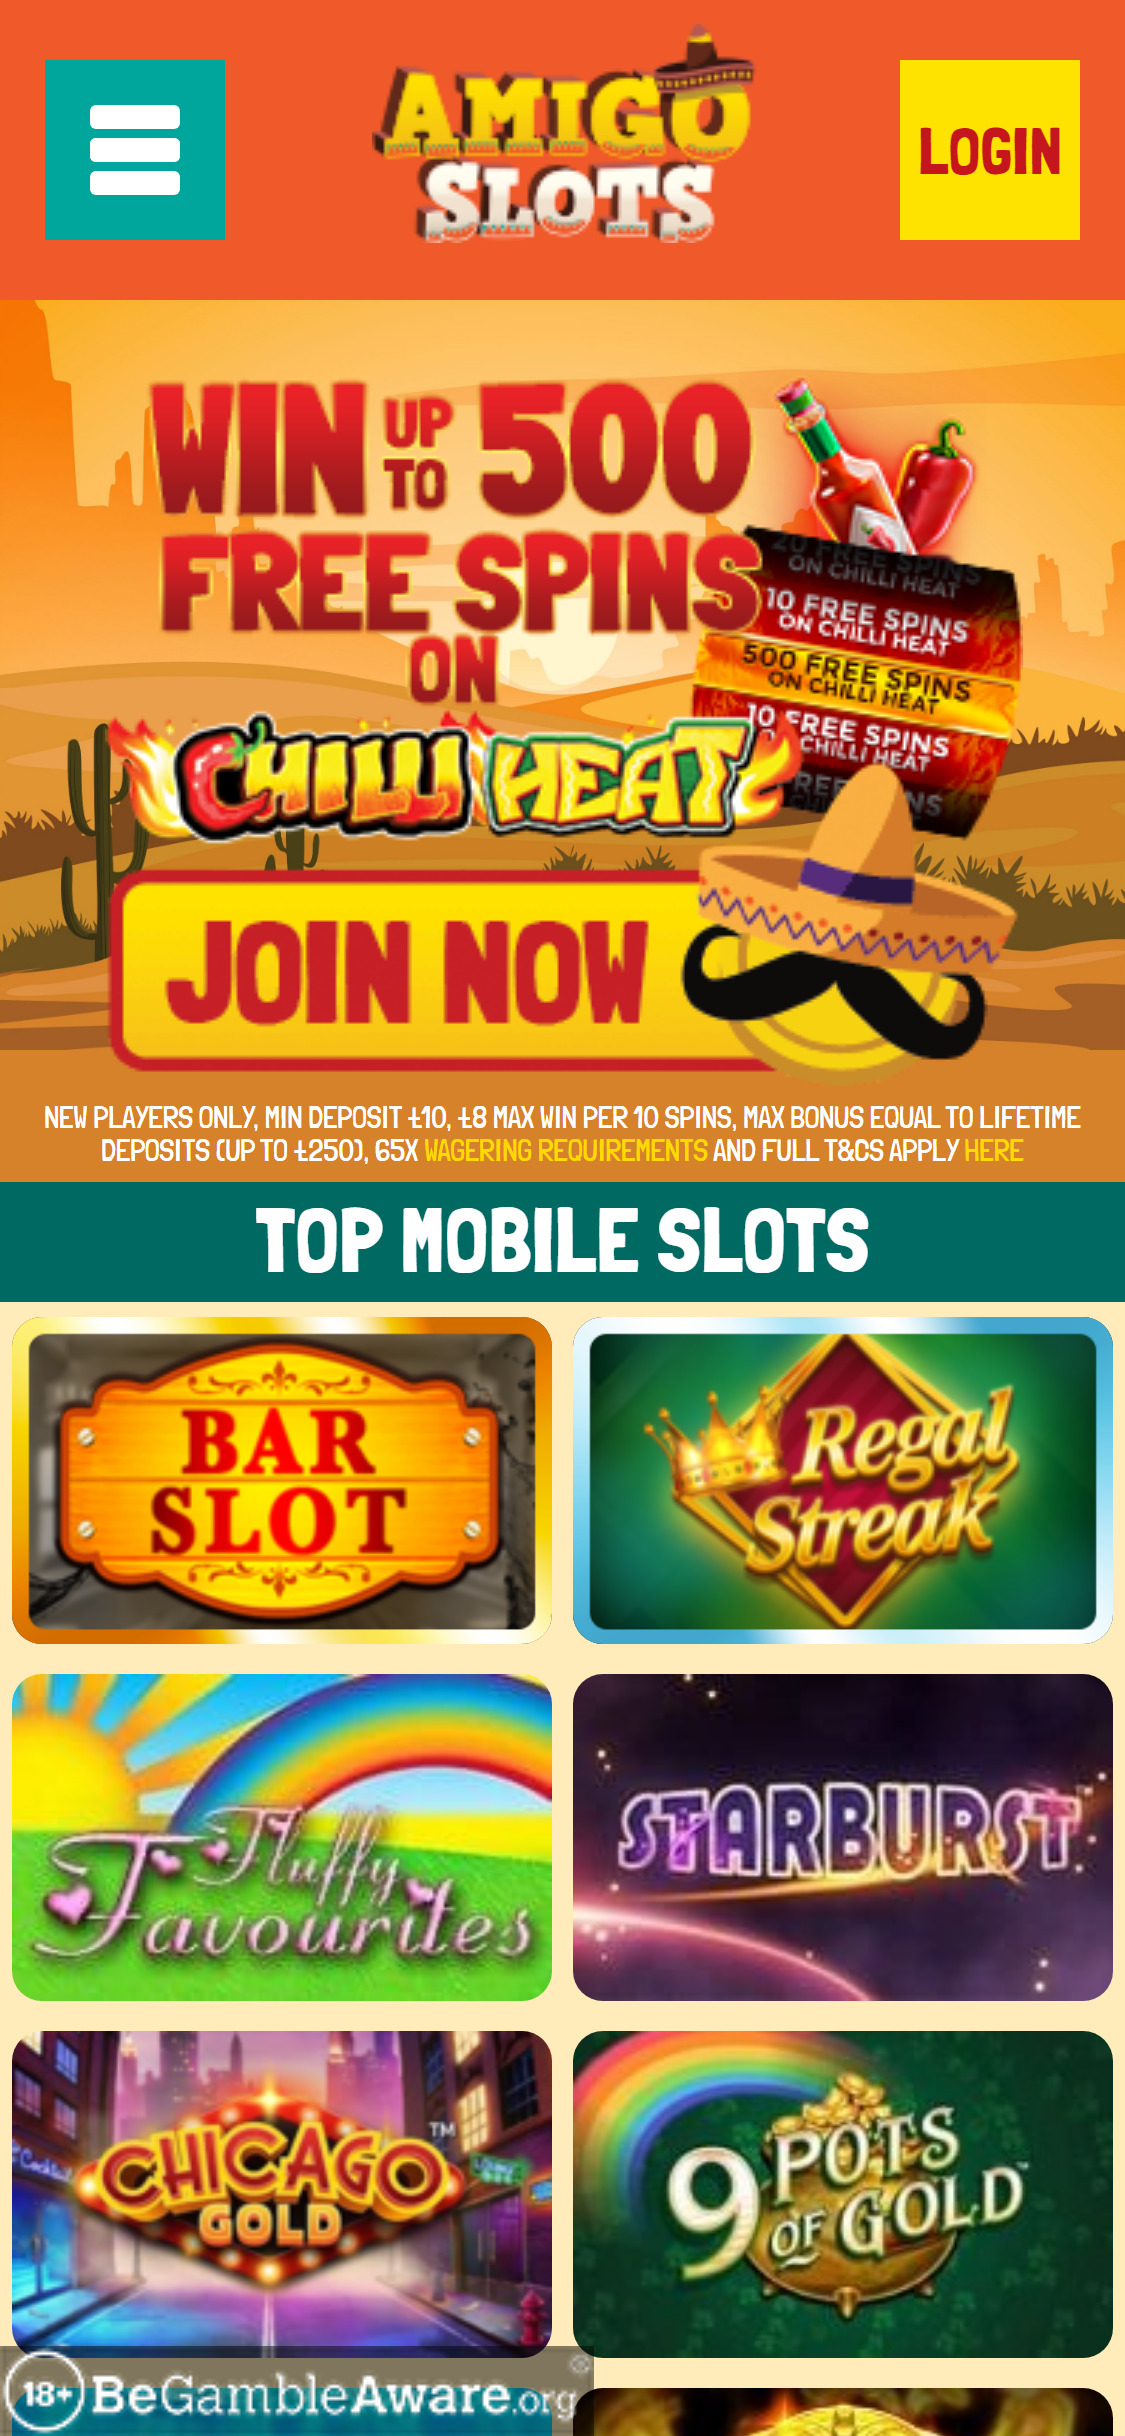 Amigo Slots Casino Mobile Review